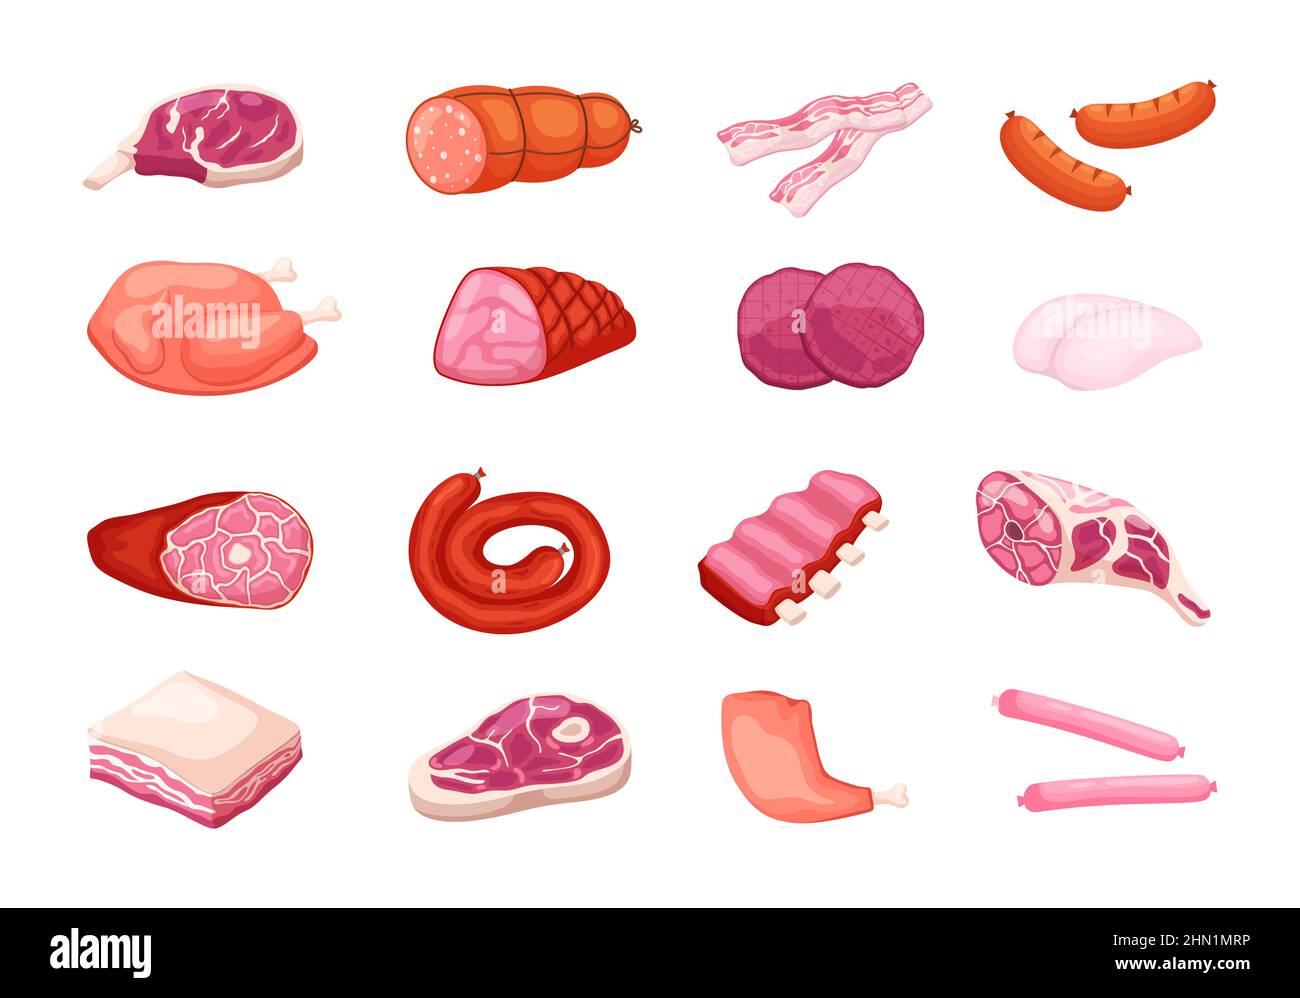 Cartoon-Fleischprodukte. Rohes Schweinefleisch, Rindersteak, Huhn und Lamm, Wurst, Speck und Salami, Verschiedene gastronomische halbfertige Lebensmittel, Tier Stock Vektor